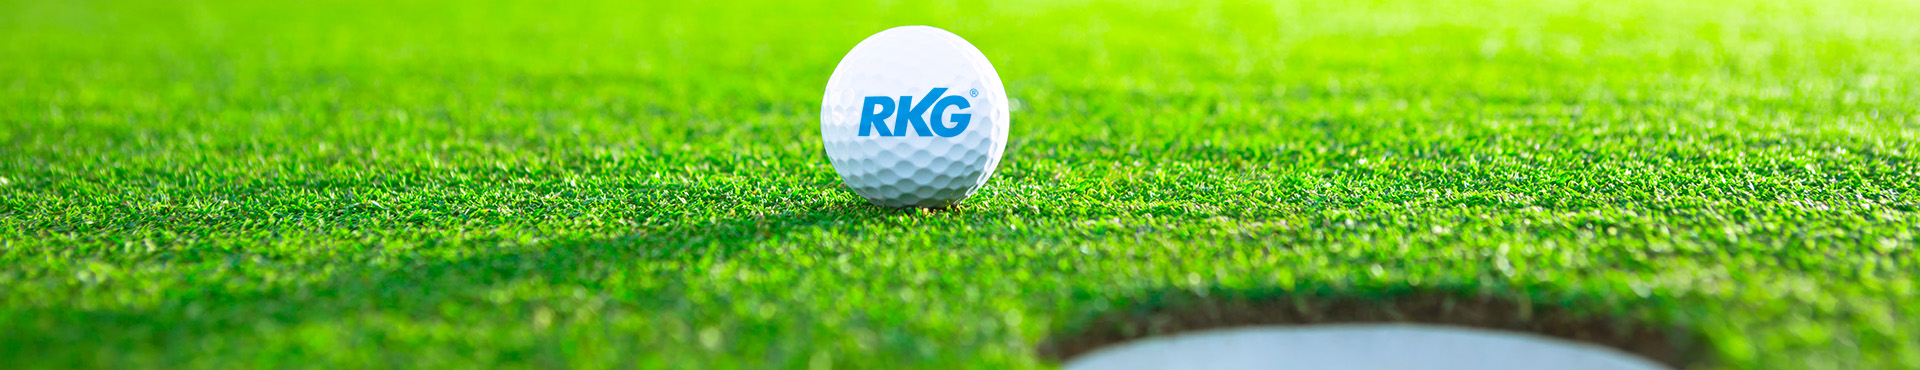 RKG Golf Cup 2022 RKG